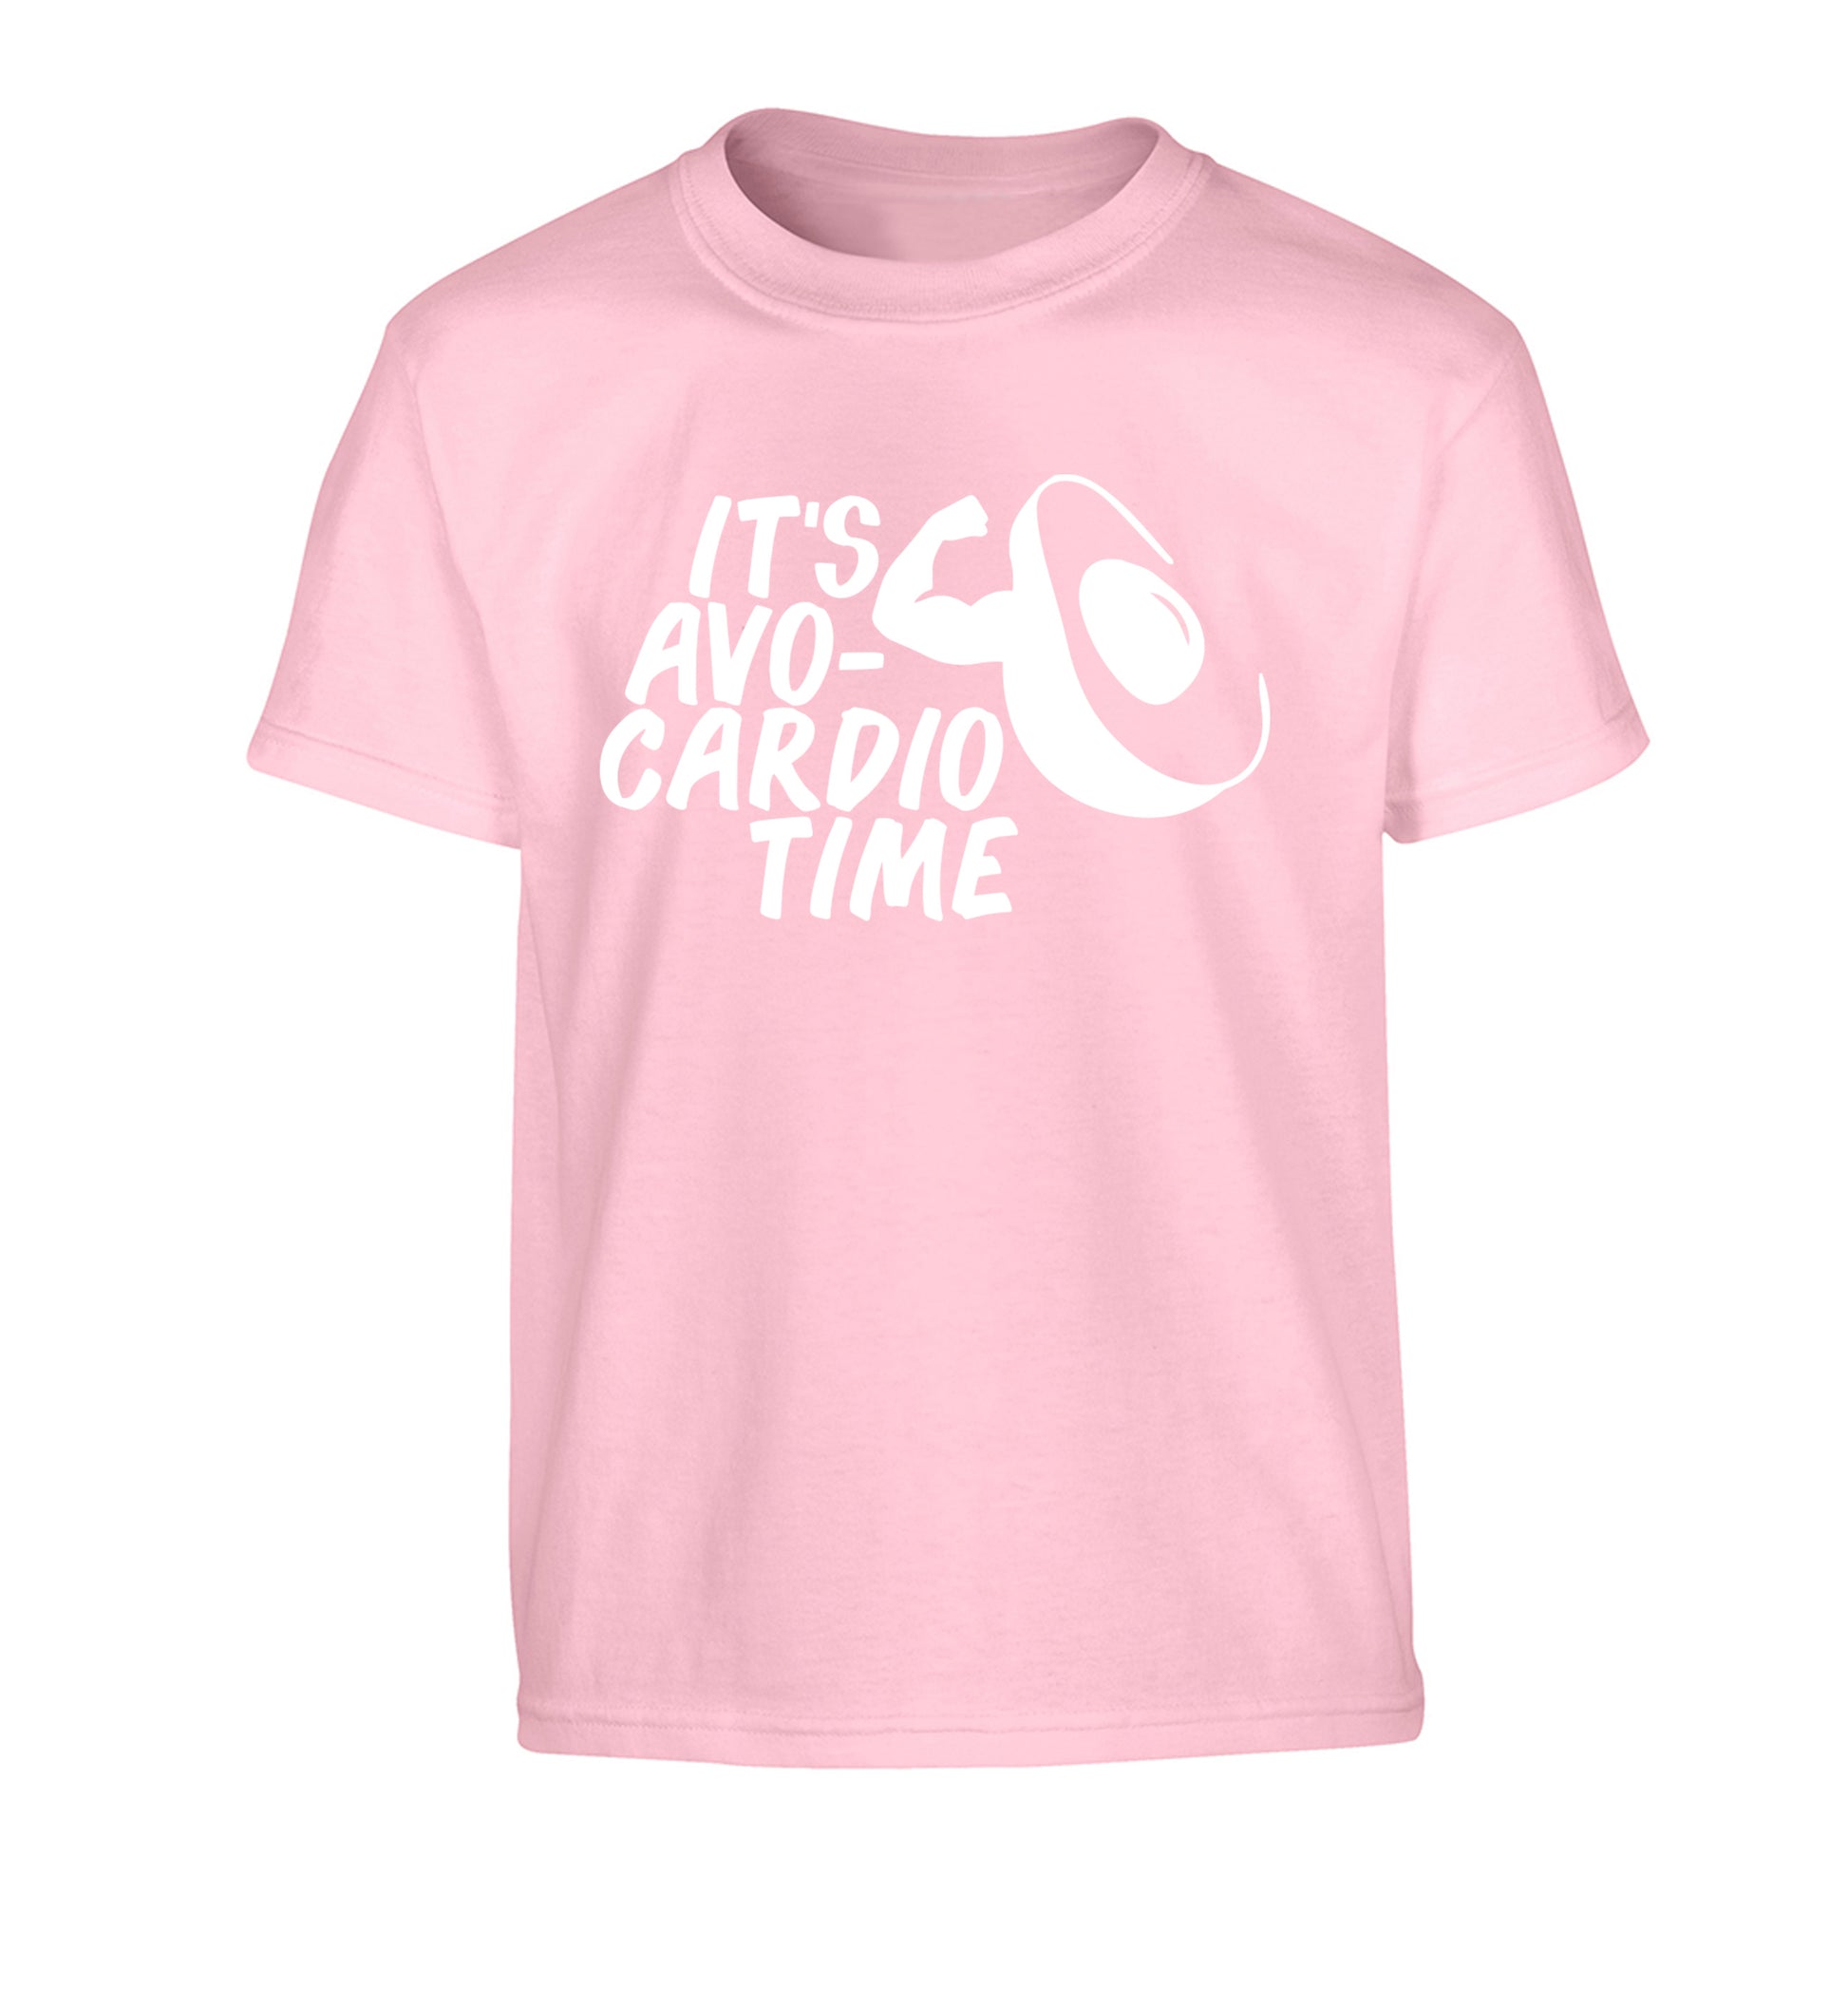 It's avo-cardio time Children's light pink Tshirt 12-14 Years